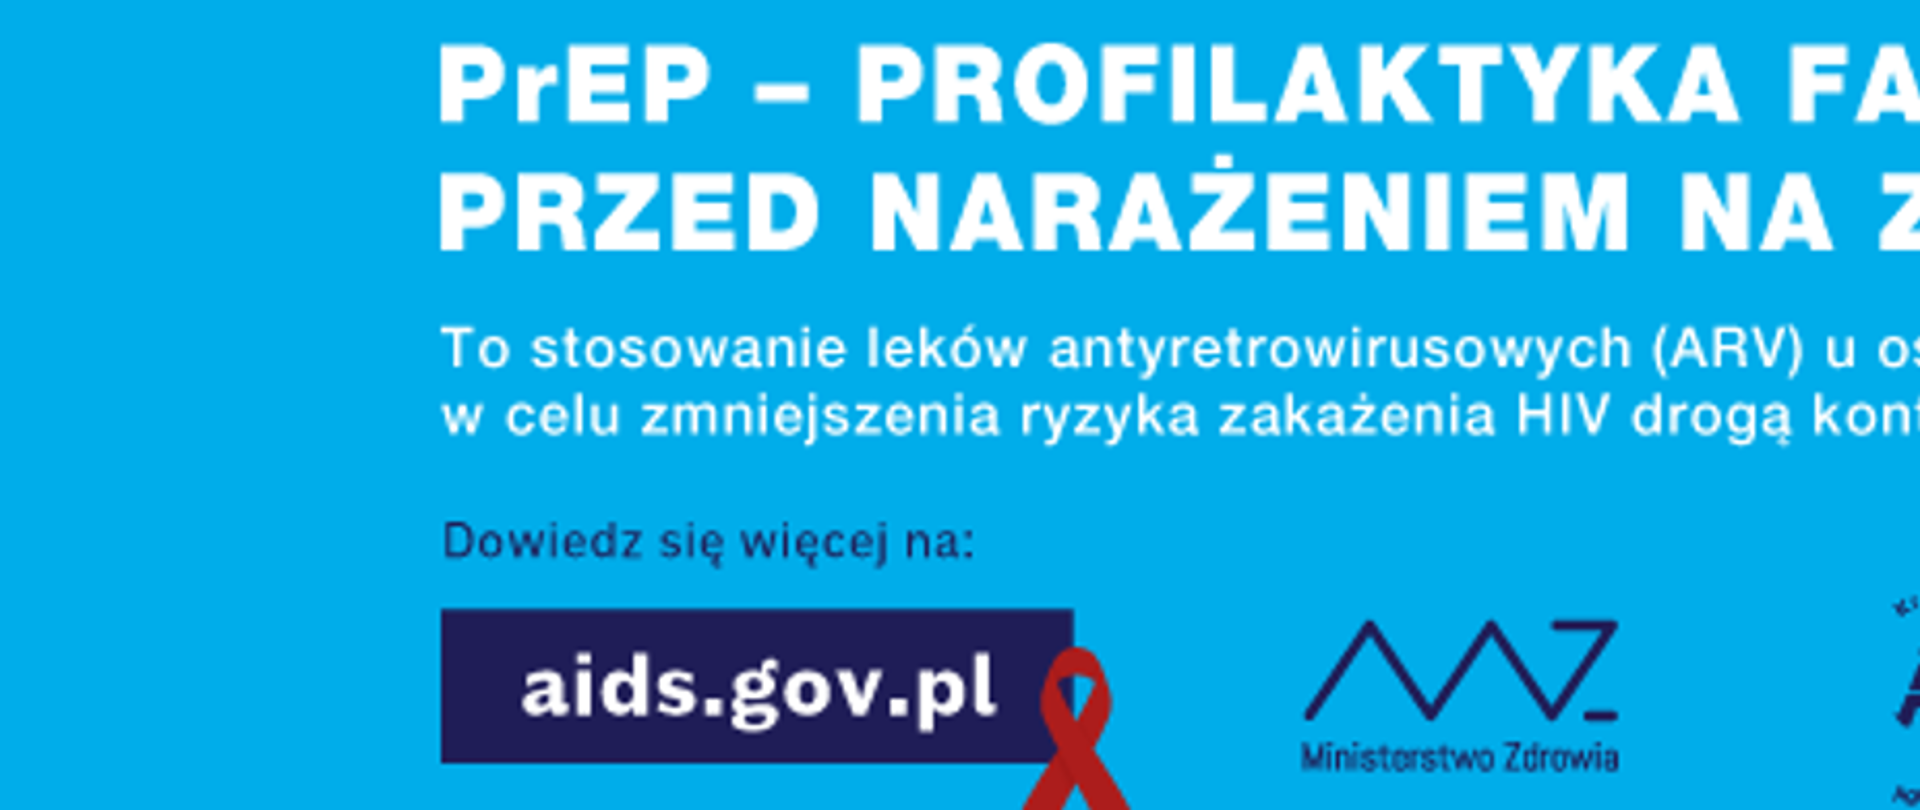 Kampania profilaktyczna HIV/AIDS "Czy wiesz, że..." - nowa odsłona